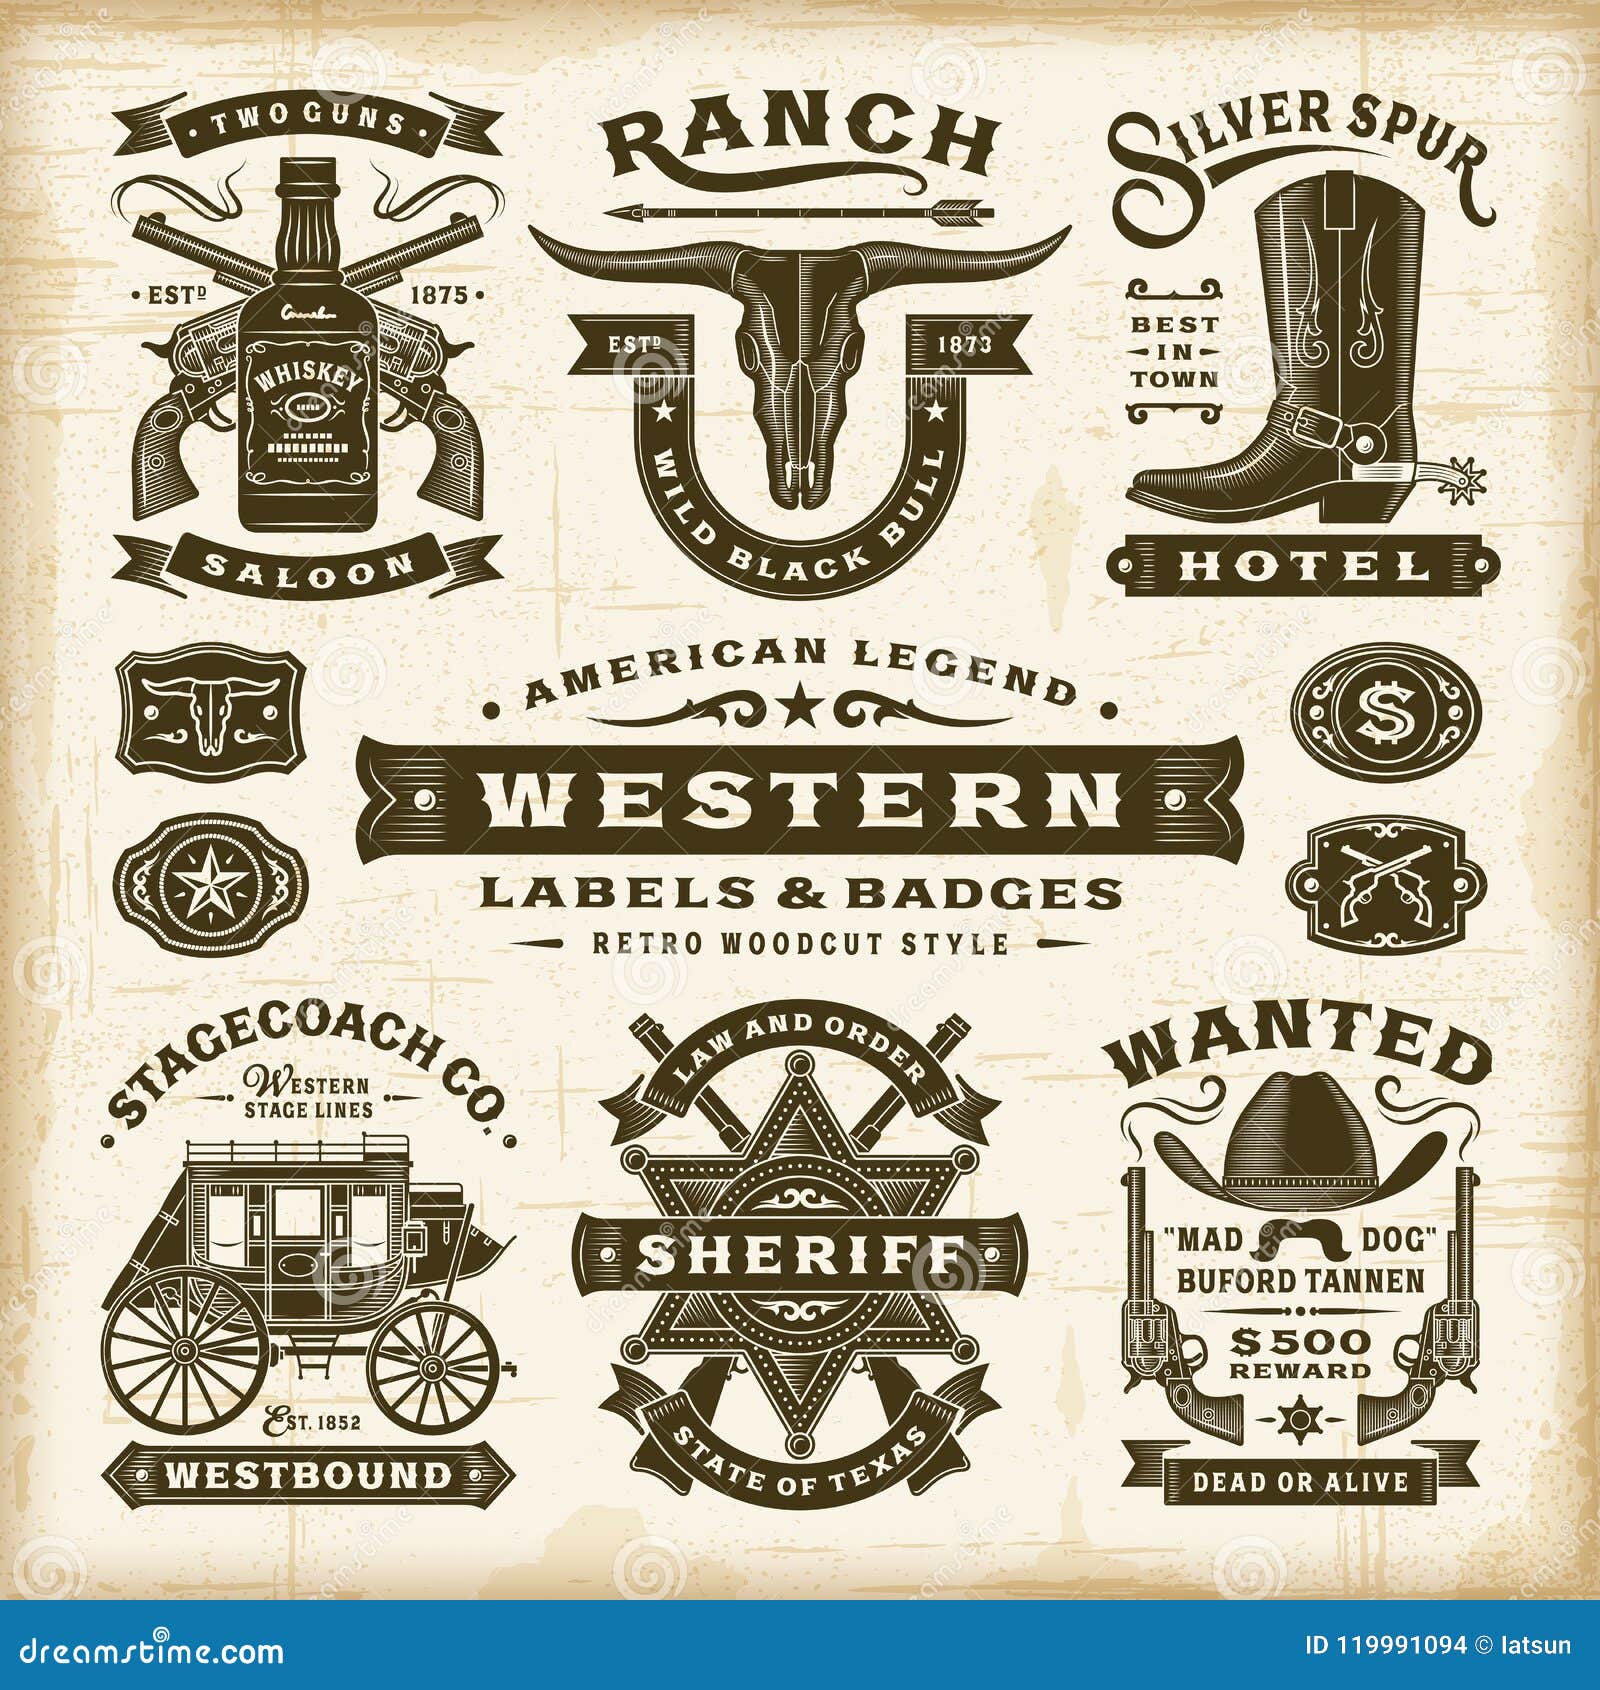 vintage western labels and badges set